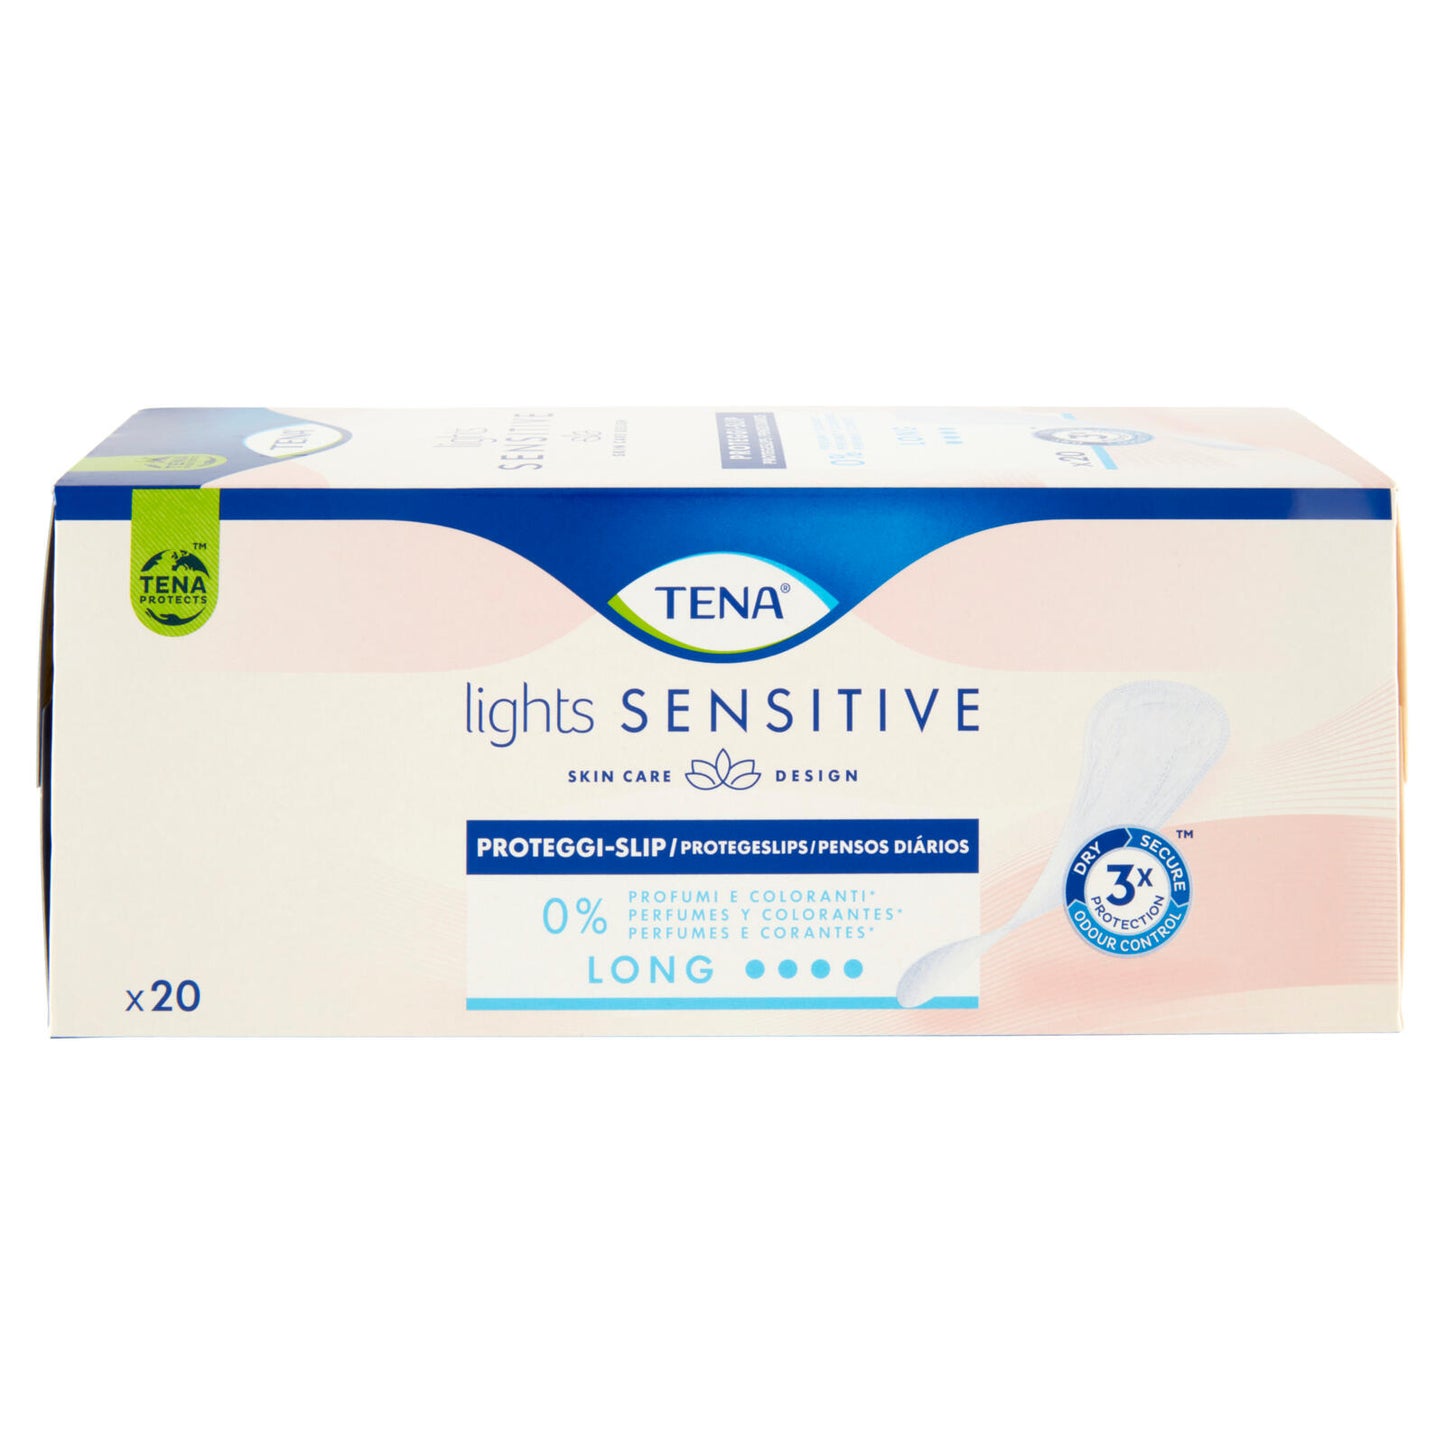 Tena lights Sensitive Proteggi-Slip Long 20 pz